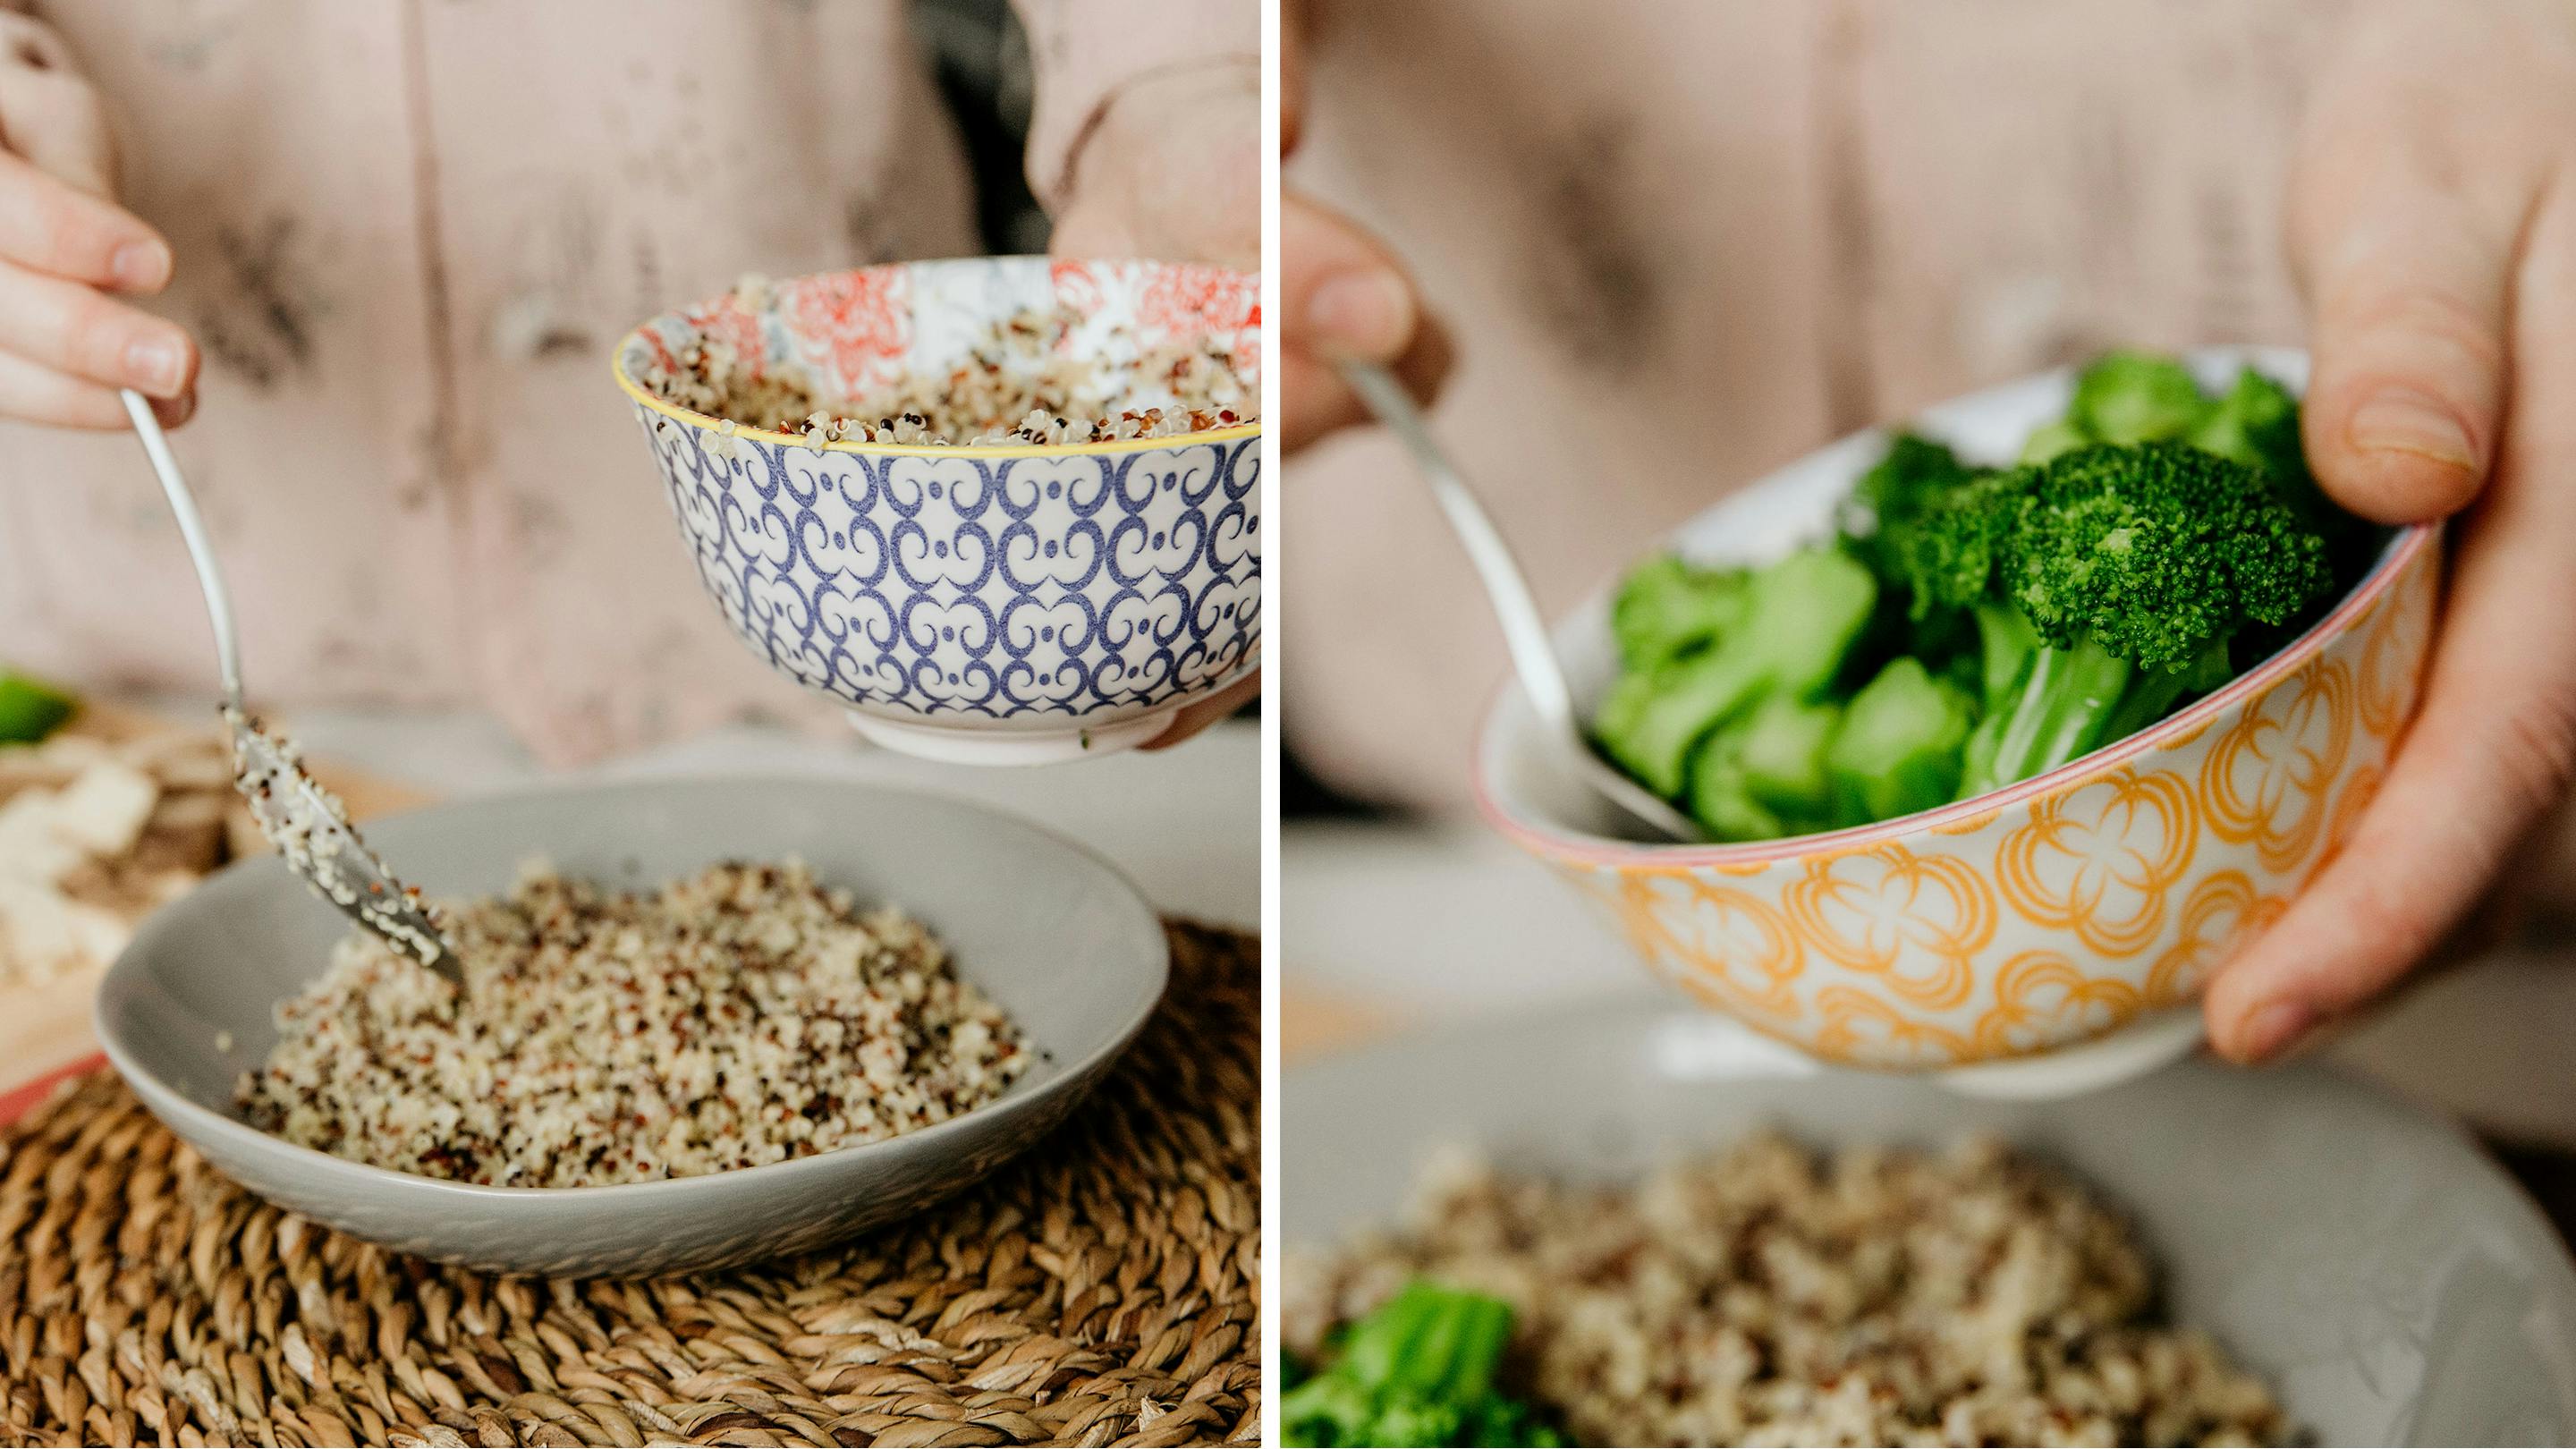 Quinoa schmeckt super und ist zudem gesund. Und jetzt: Frisches Gemüse nach Wahl! (Marke des Geschirrs: Butlers.)